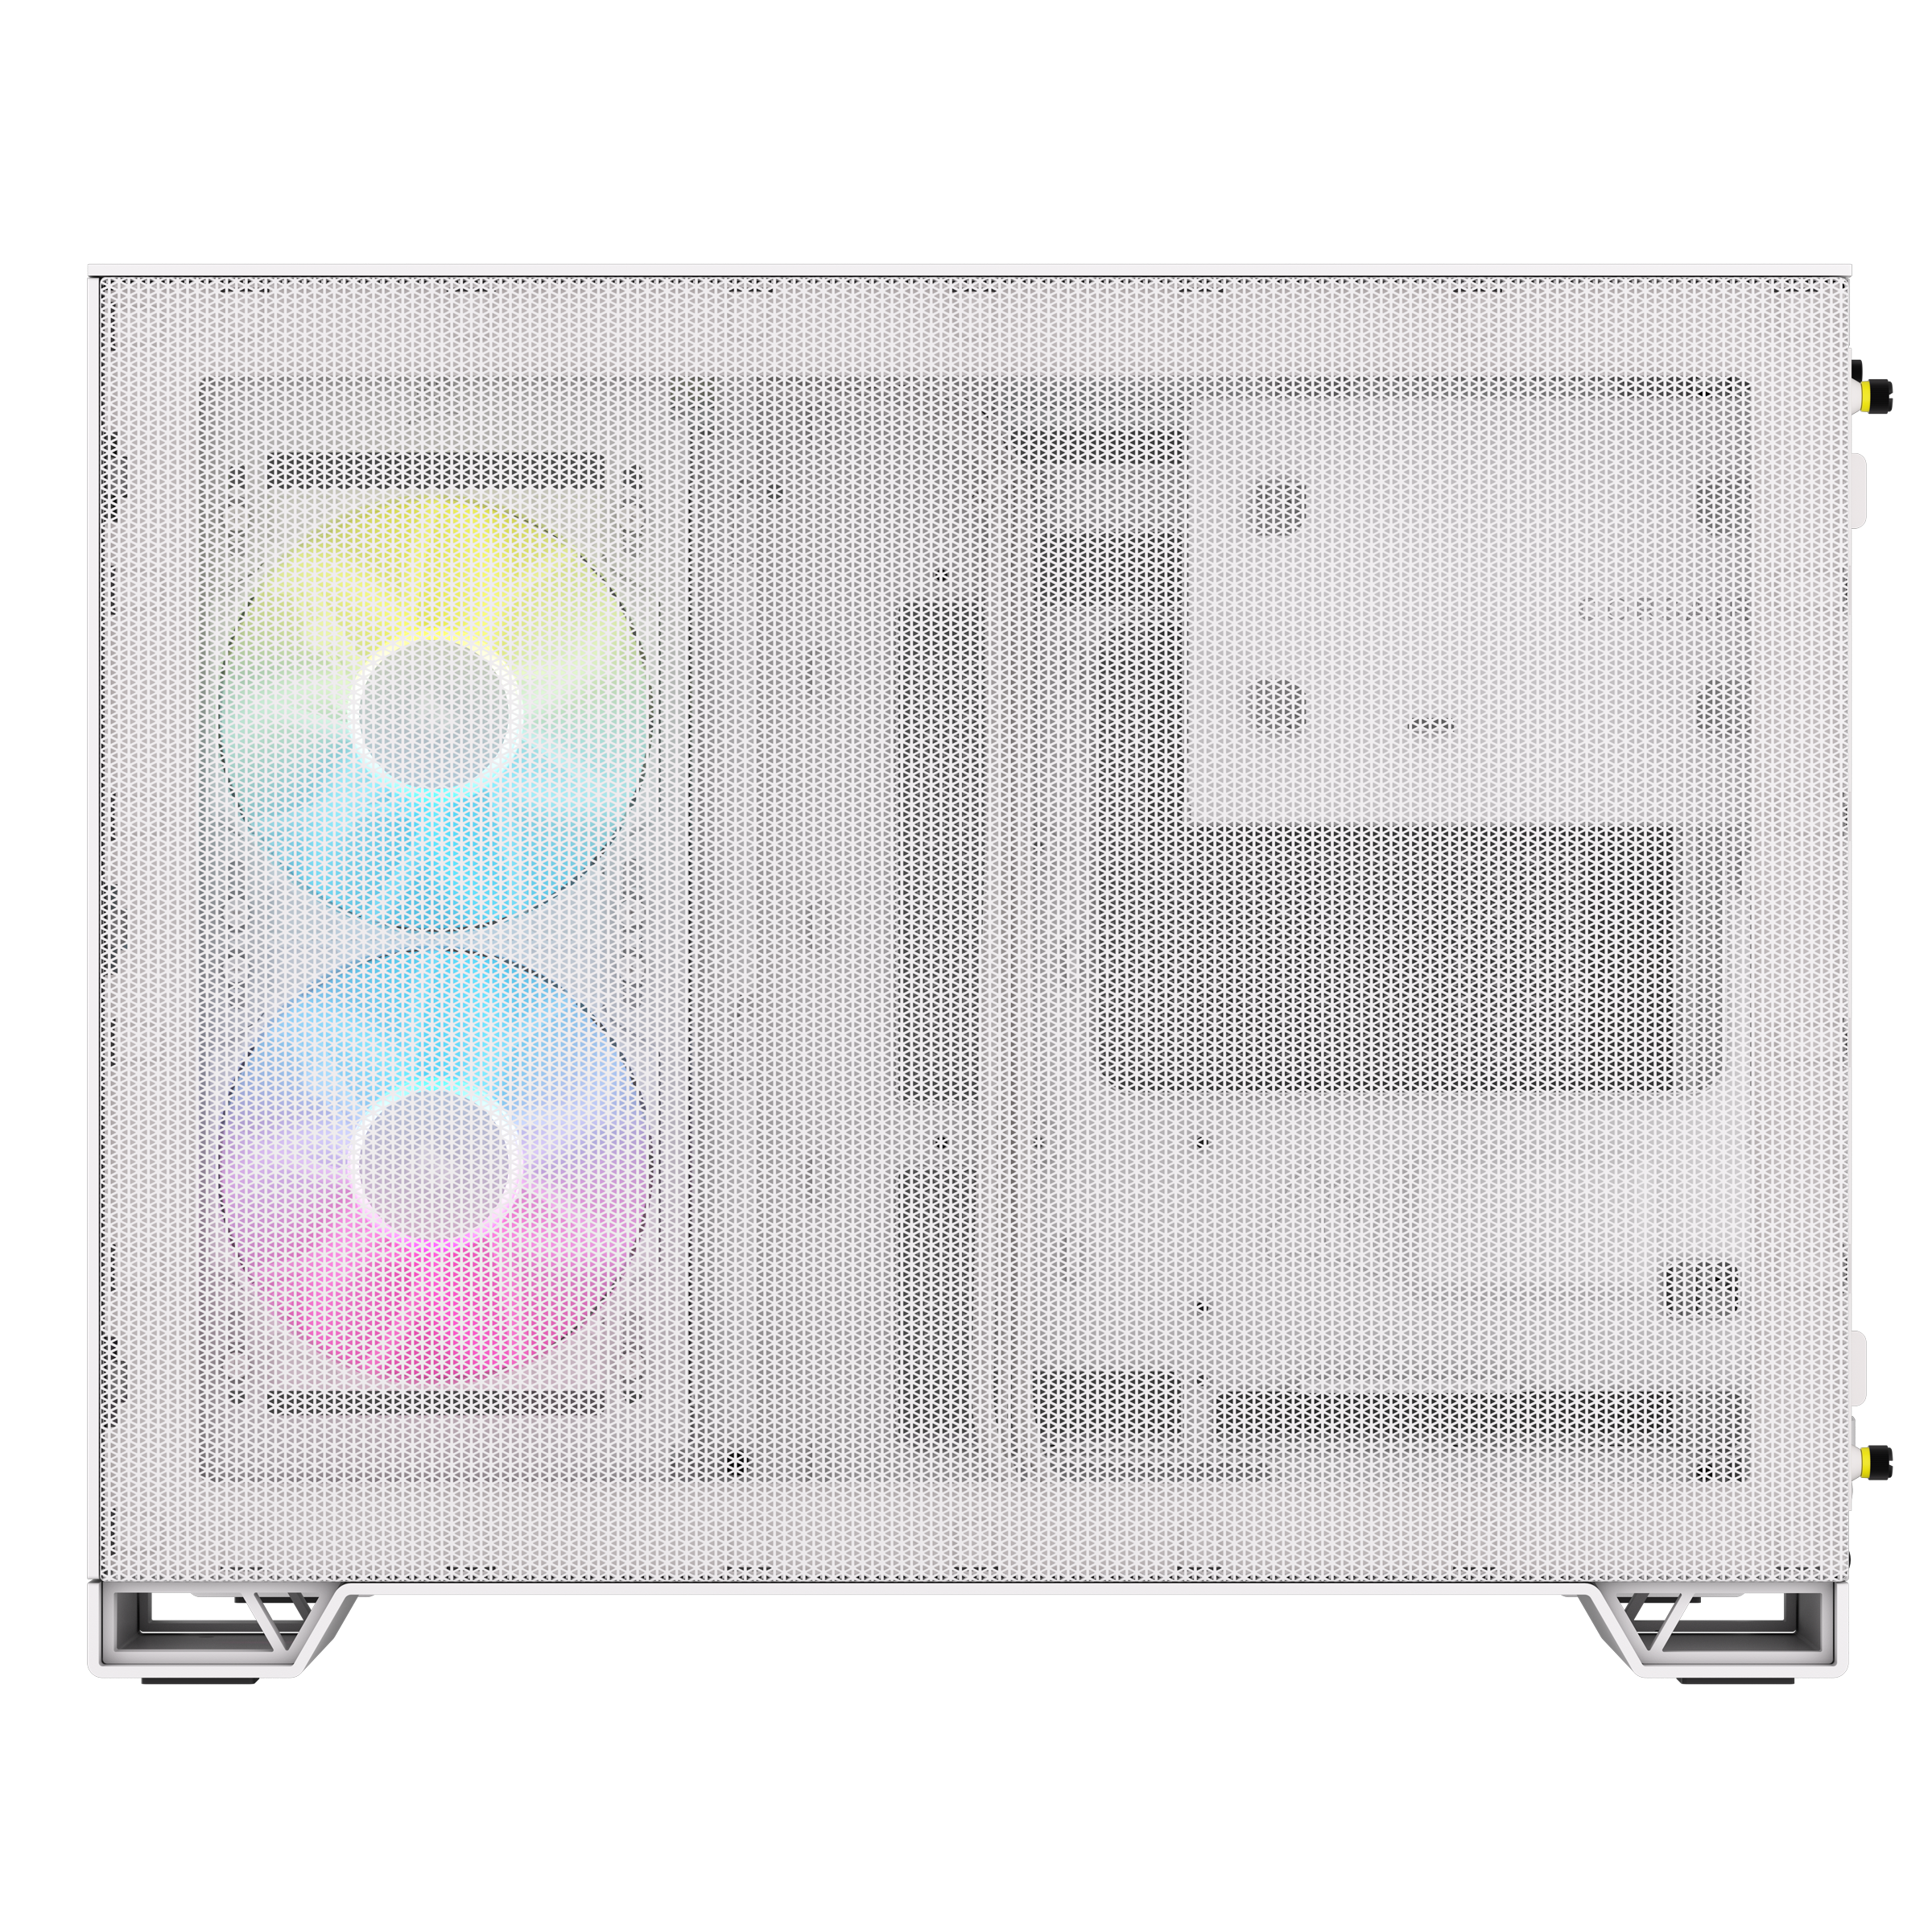 CORSAIR - Corsair iCUE LINK 2500X RGB Micro ATX Dual Chamber PC Case - White CC-9011268-WW